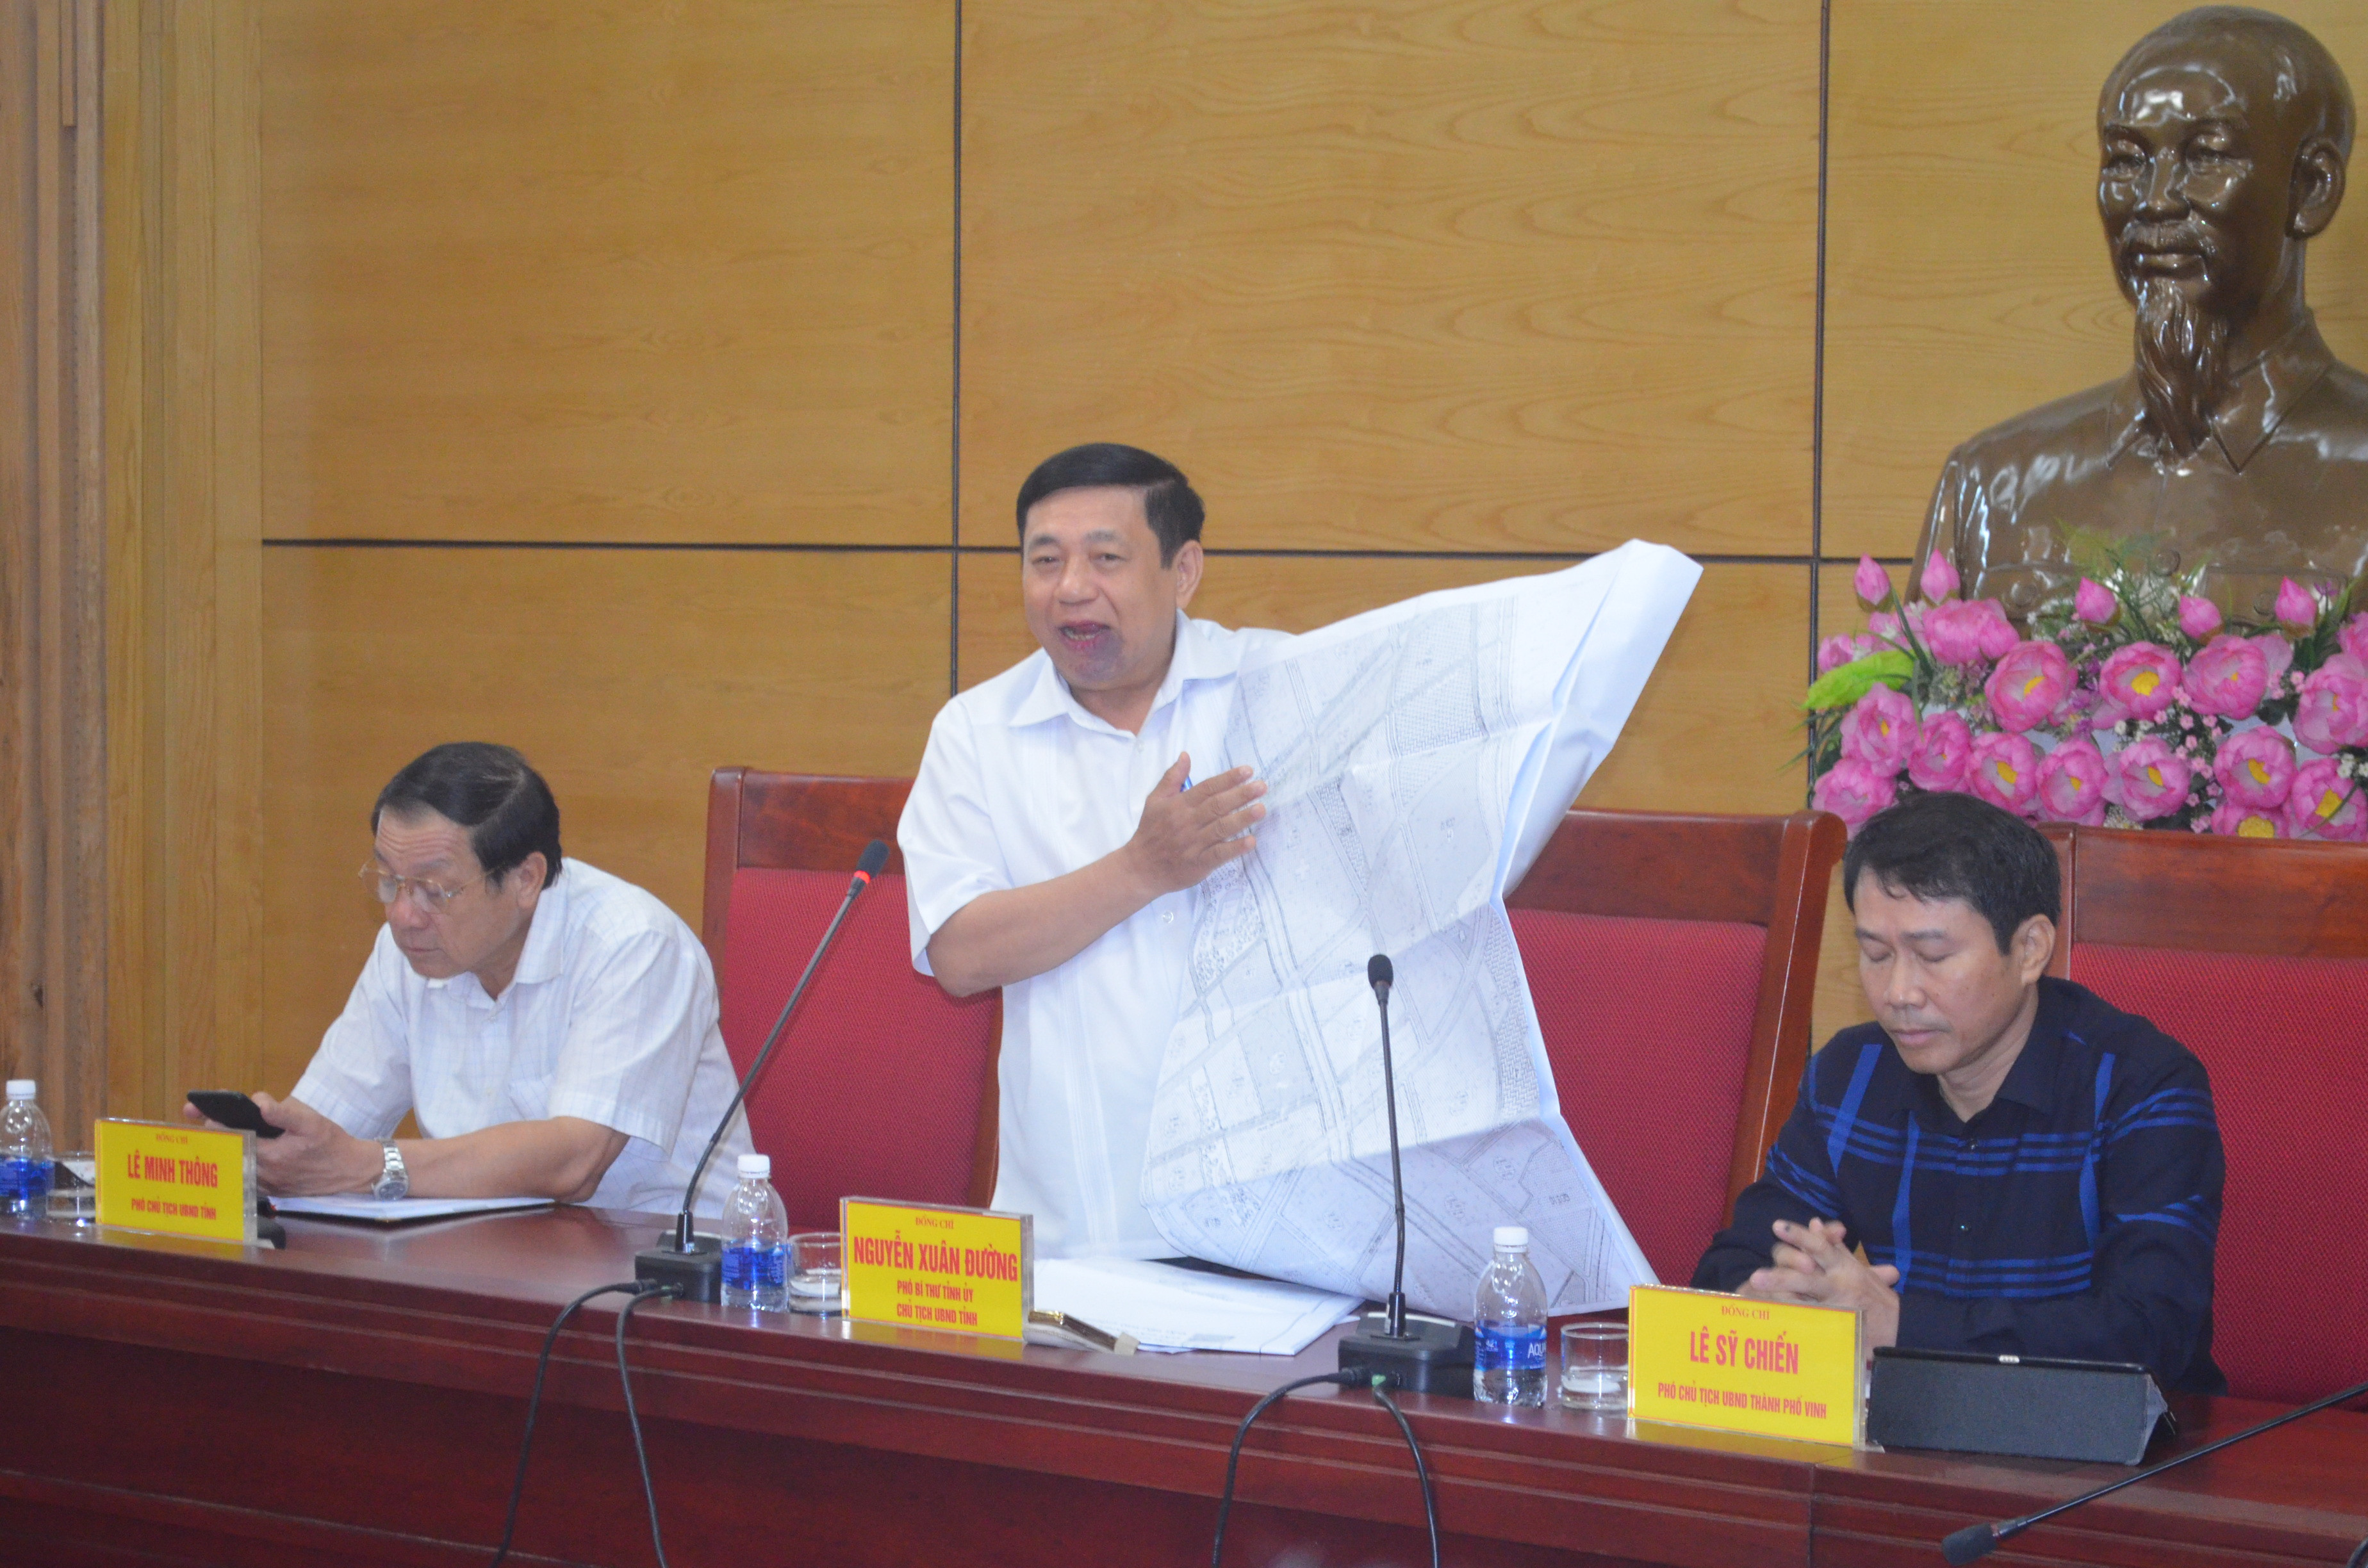 Chủ tịch UBND tỉnh Nguyễn Xuân Đường kiểm tra quy hoạch chi tiết xã Nghi Phú năm 2003 tại buổi làm việc ngày 18/9/2018. Ảnh: Nhật Lân.